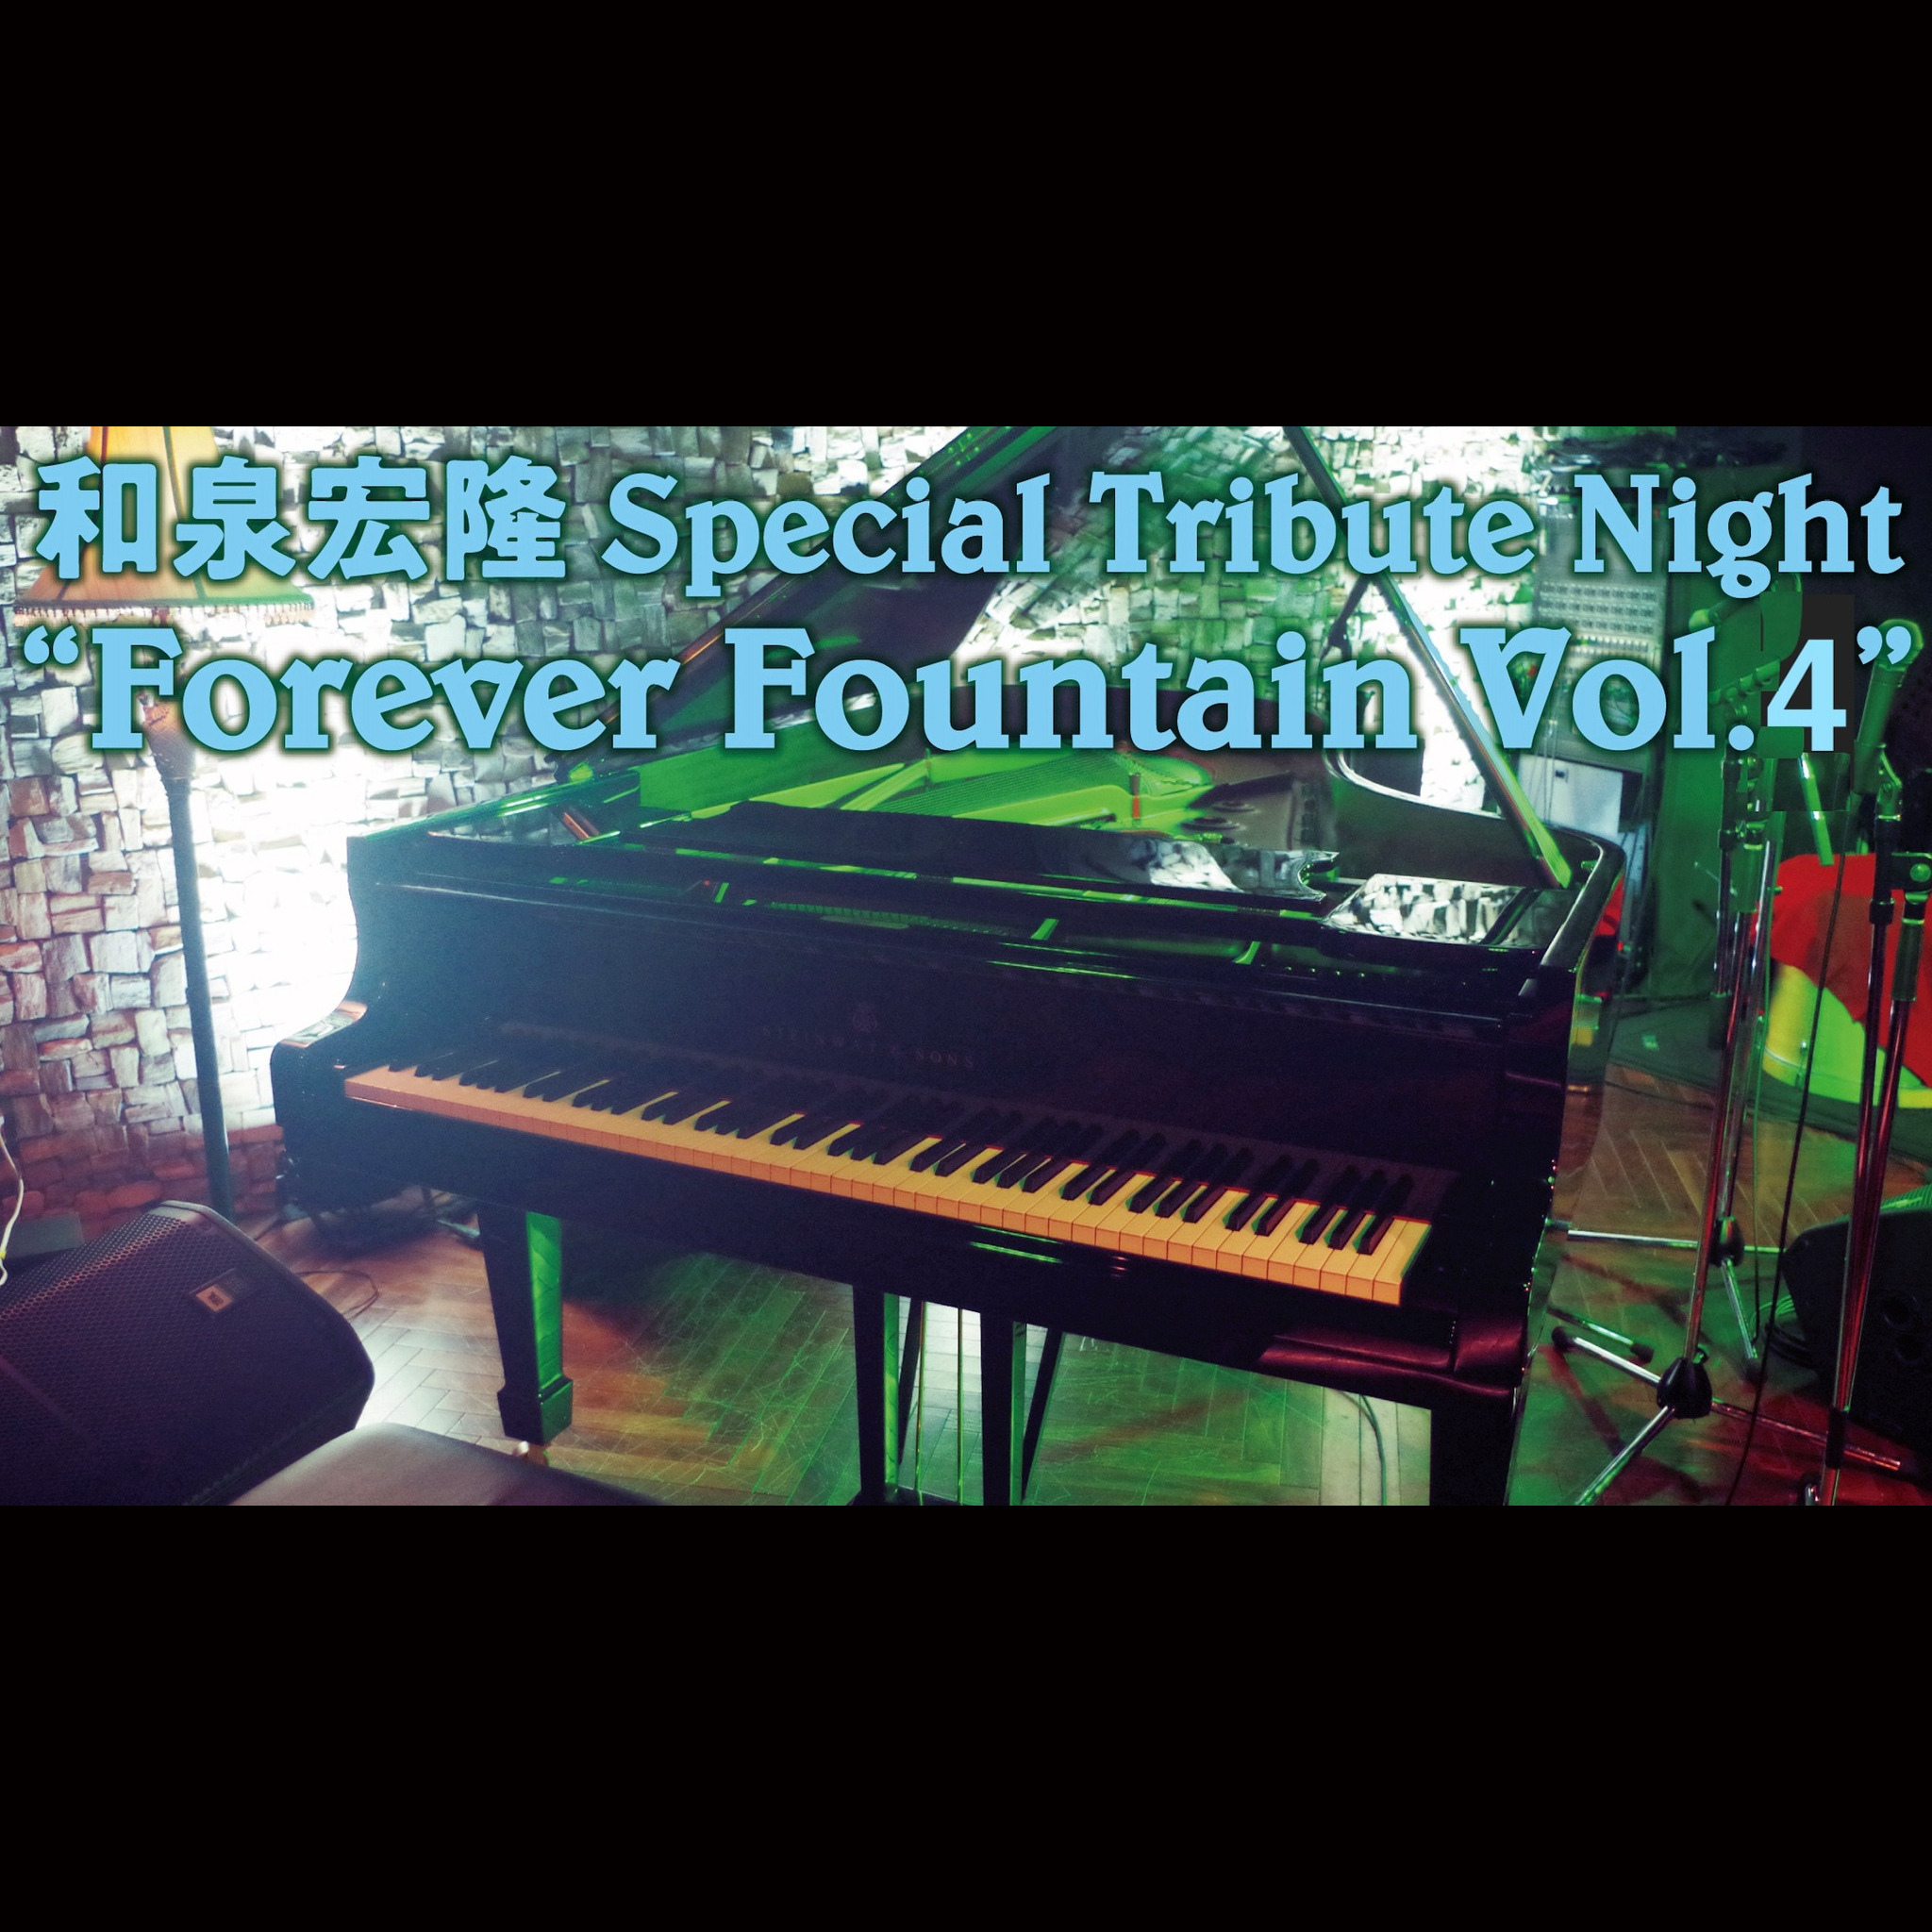 和泉宏隆 スペシャル・トリビュート・ナイト "Forever Fountain Vol.4" 和泉宏隆を偲ぶ会 Part.3《同時配信あり》